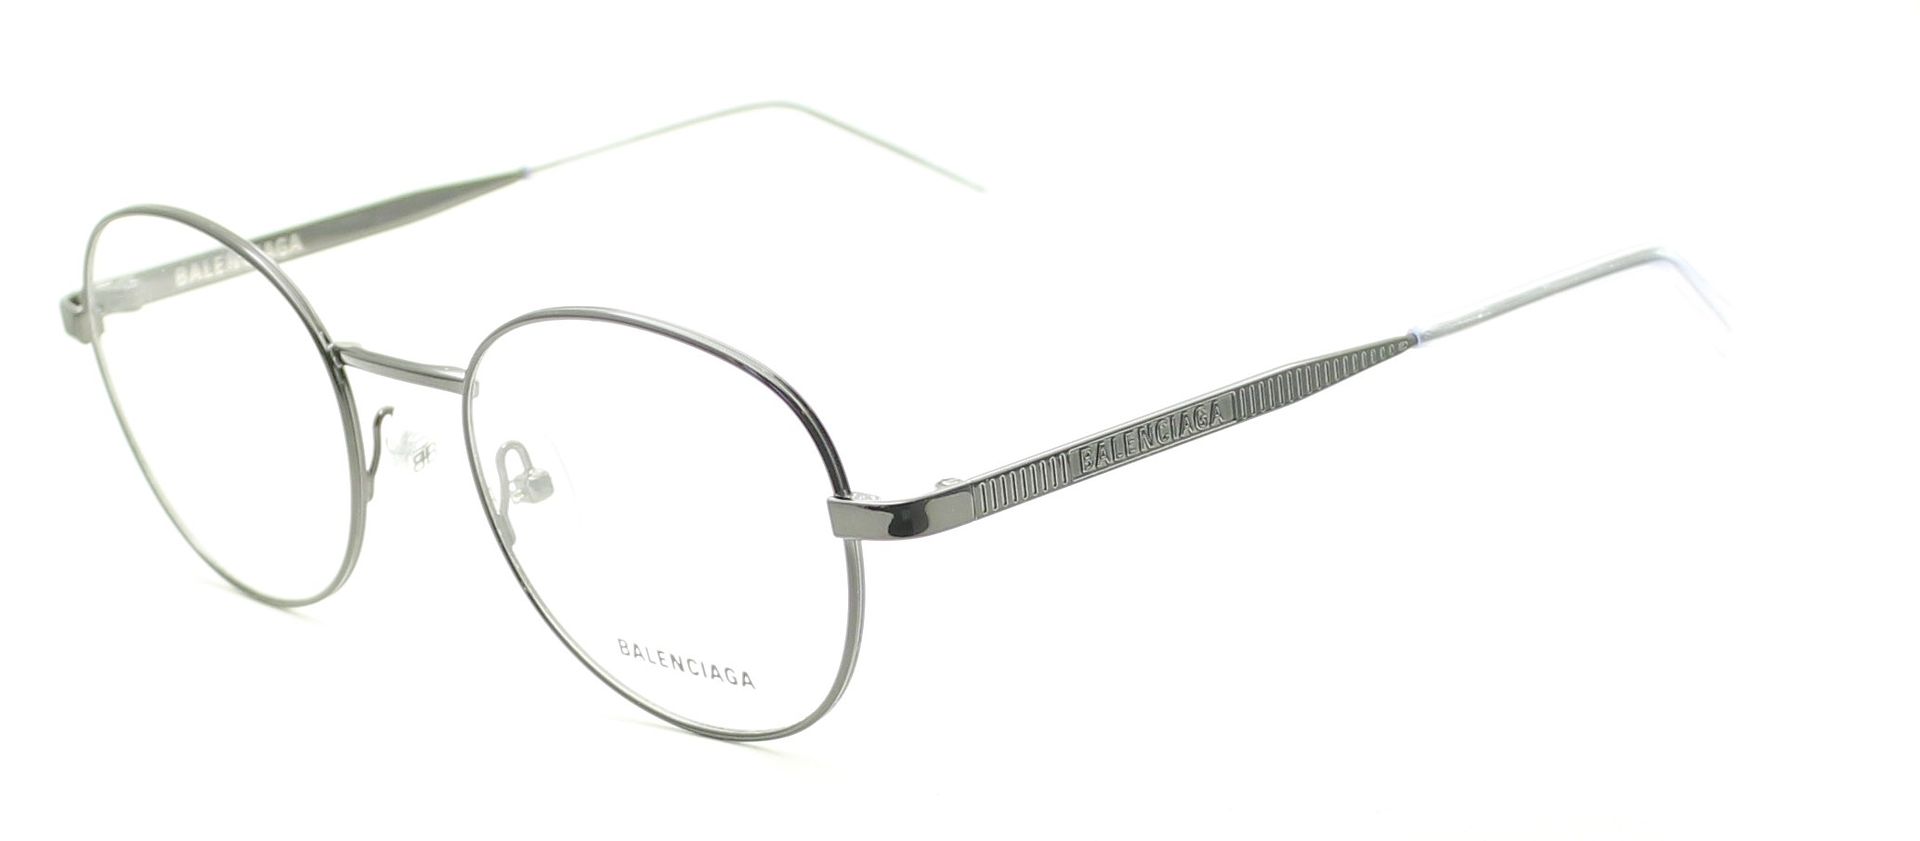 BALENCIAGA BB0036O 003 Eyewear FRAMES RX Optical Eyeglasses Glasses BNIB -  Italy - GGV Eyewear